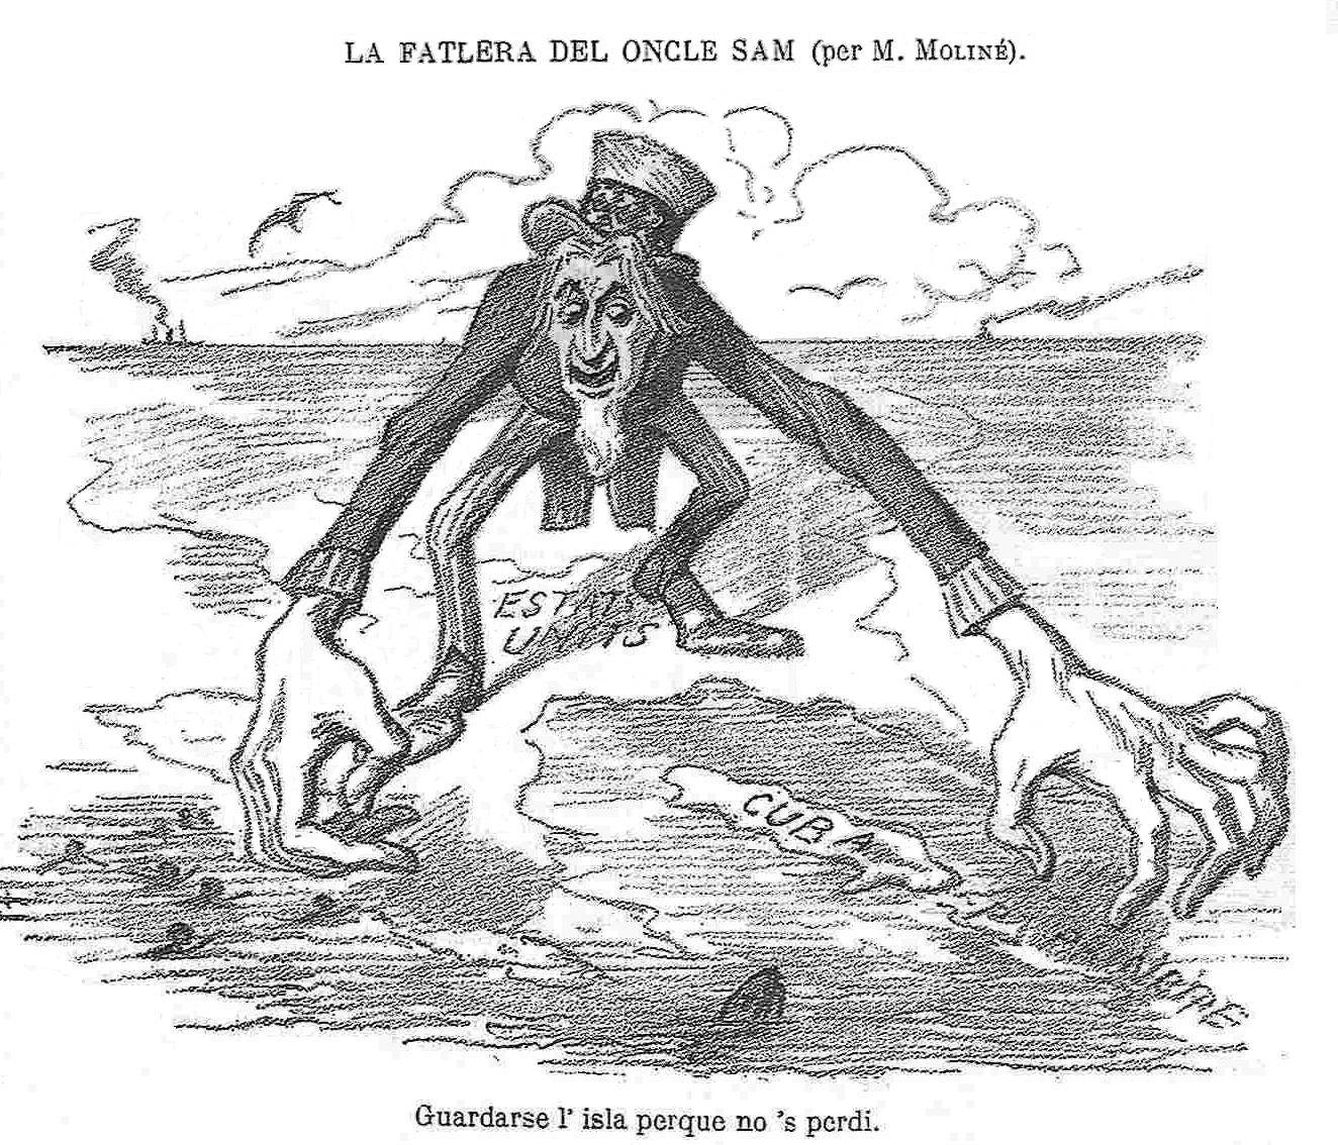 Caricatura francesa sobre los intereses expansionistas de EEUU.